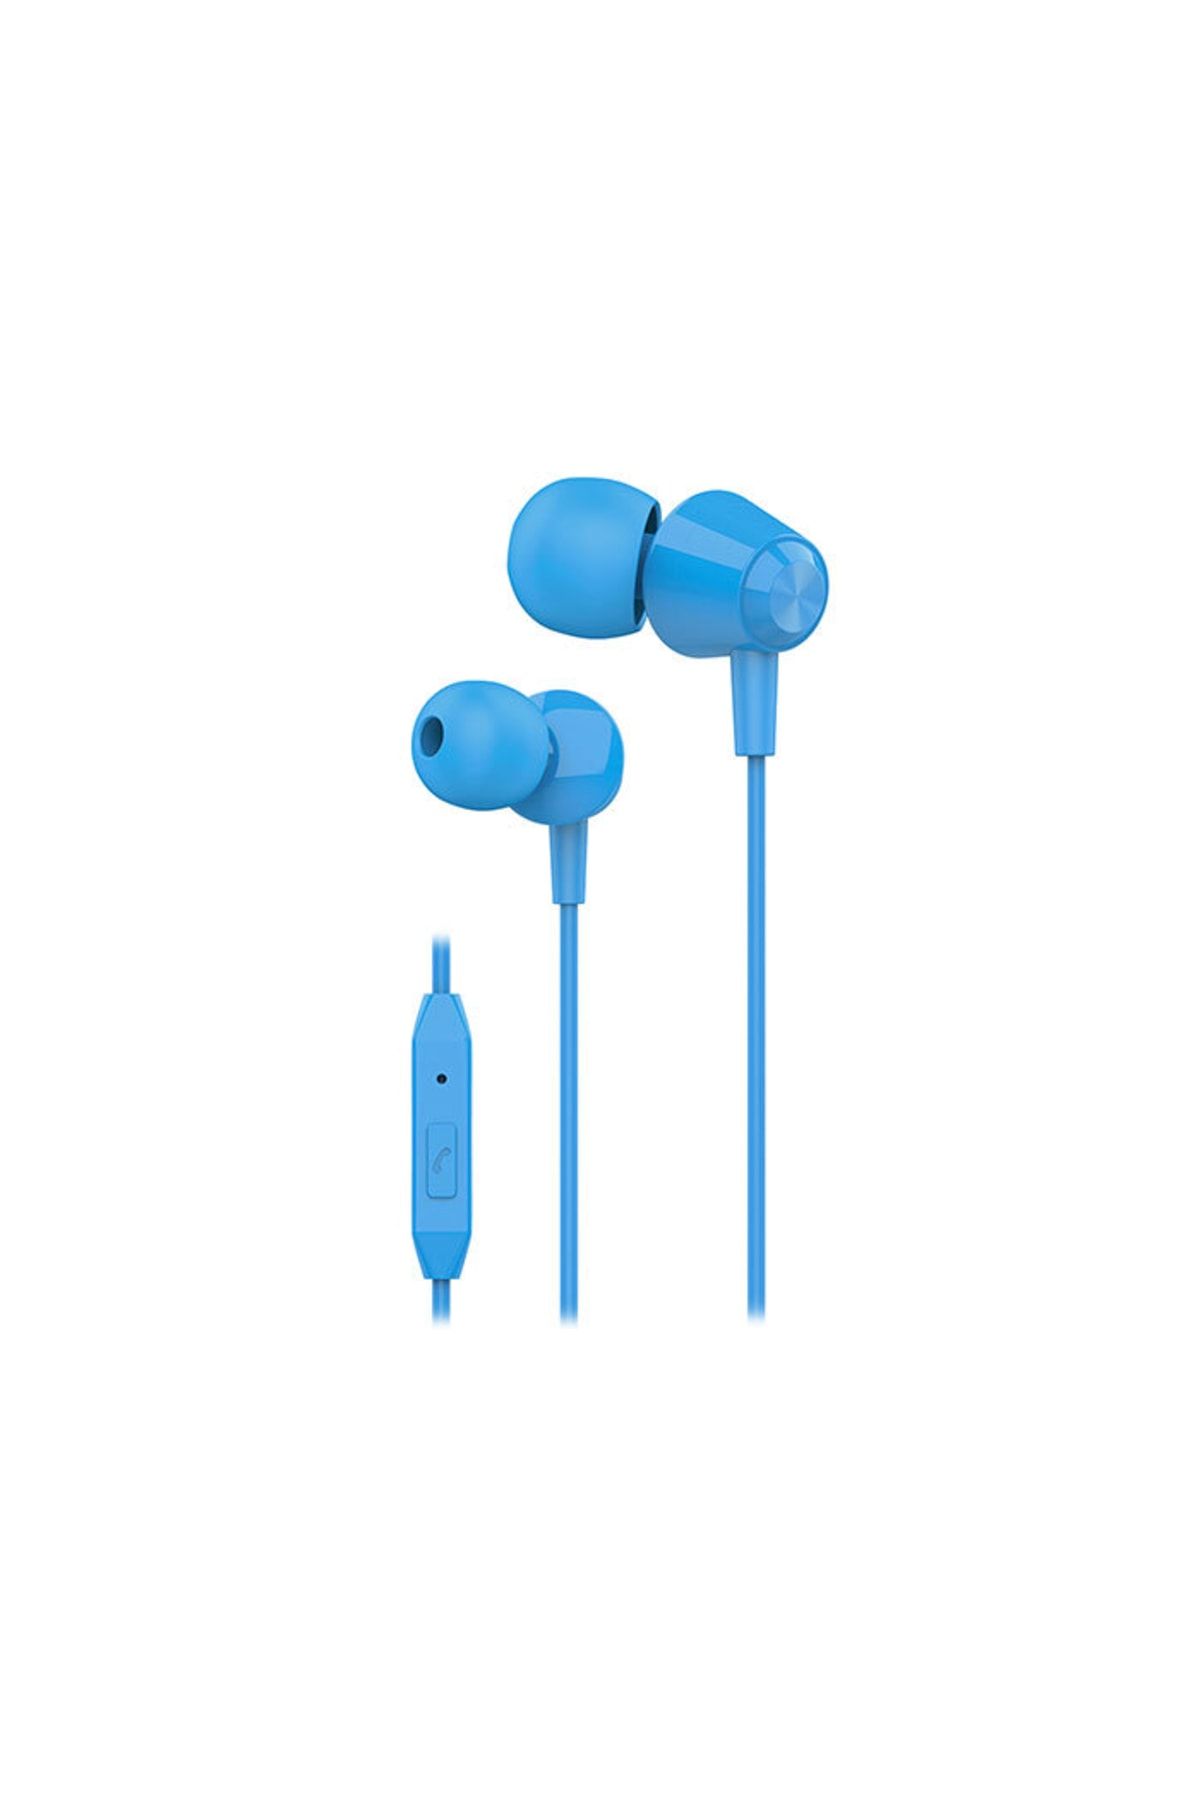 S-Link Sl-ku160 Mobil Telefon Uyumlu Mavi Kulak Içi Mikrofonlu Kulaklık Cep Telefonu Kulaklığı